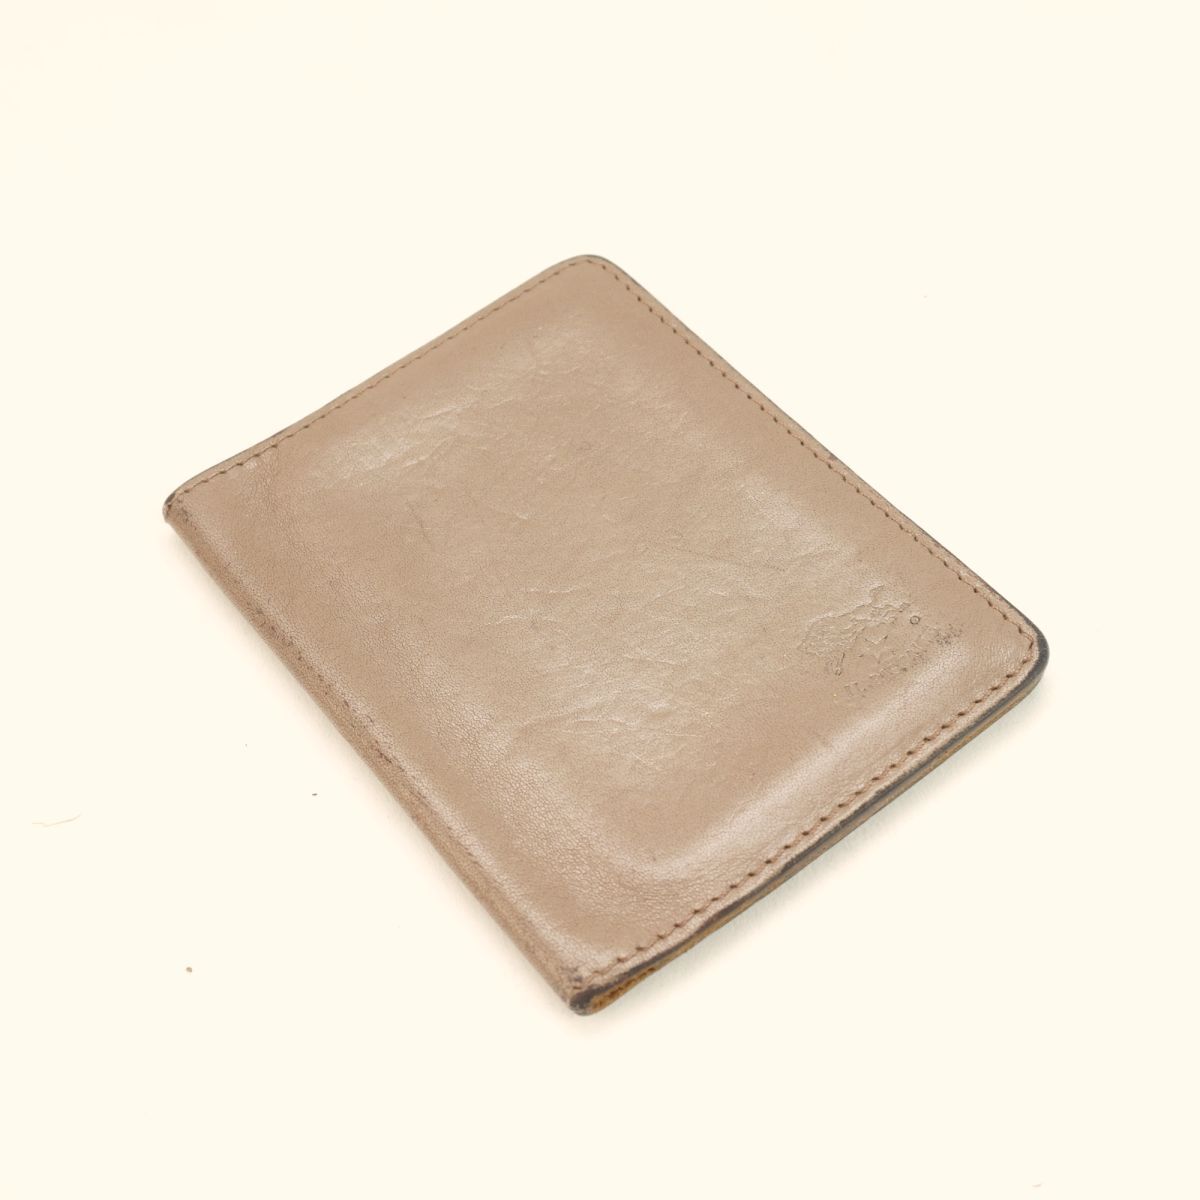 IL BISONTE Il Bisonte pass case ticket holder brand Logo leather Brown @KG50